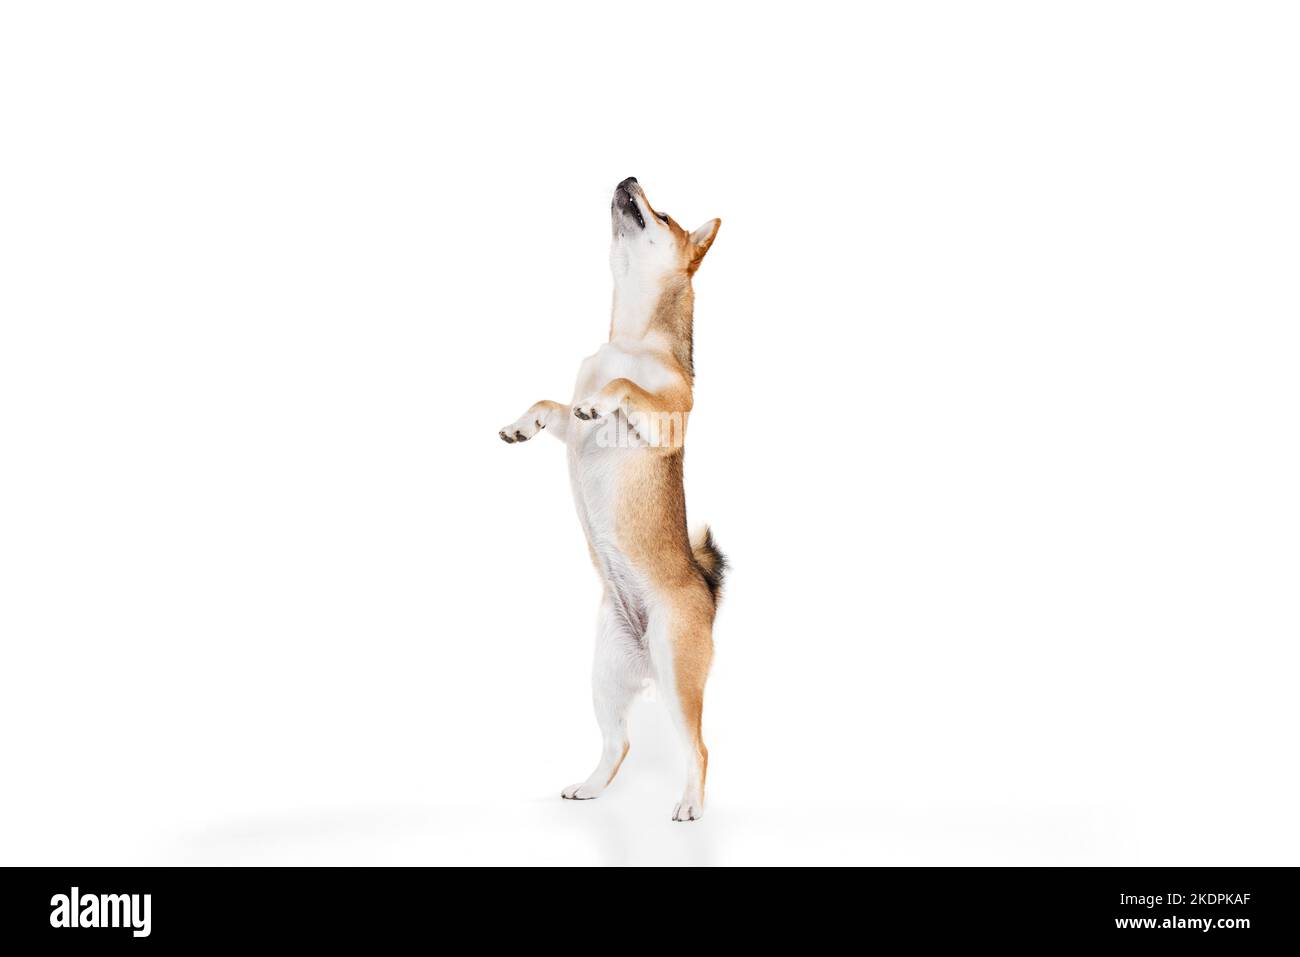 Adulto curato Shiba Inu cane isolato su sfondo bianco studio. Concetto di bellezza, vita animale, cura, salute e animali domestici purosaned. Foto Stock